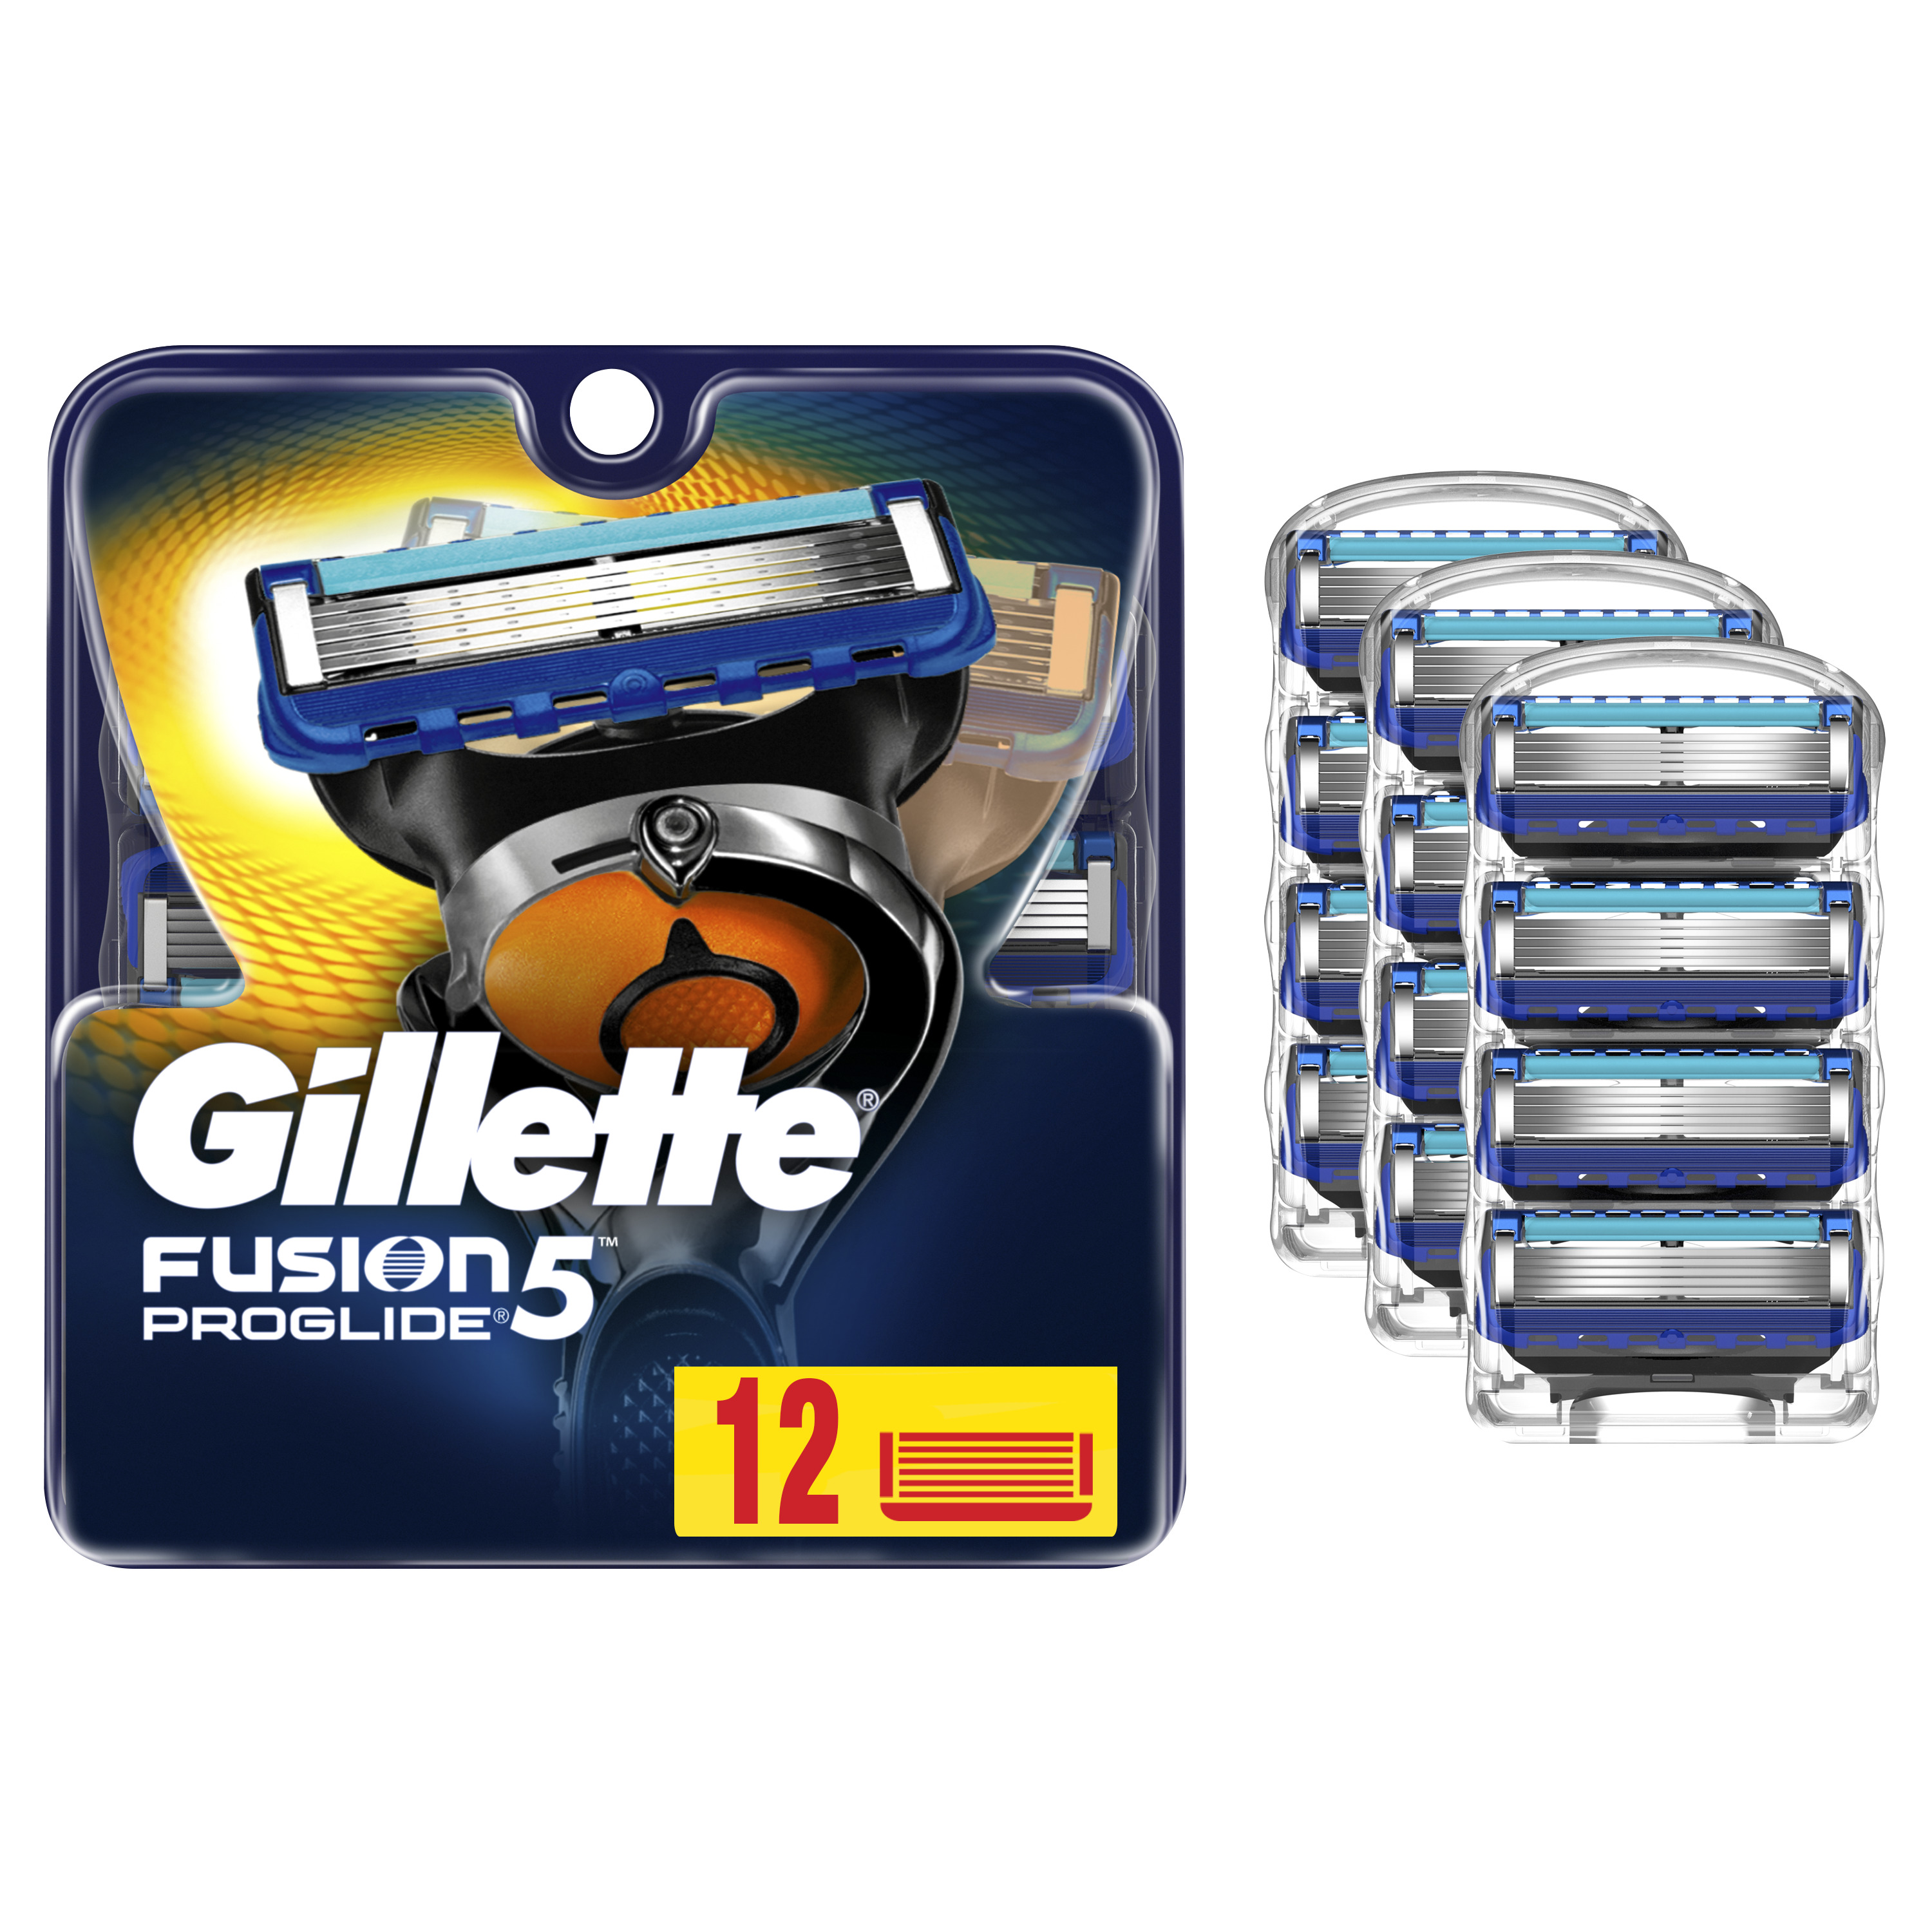 Gillette Fusion5 ProGlide Men's Razor Blades 12 Refills - image 5 of 9